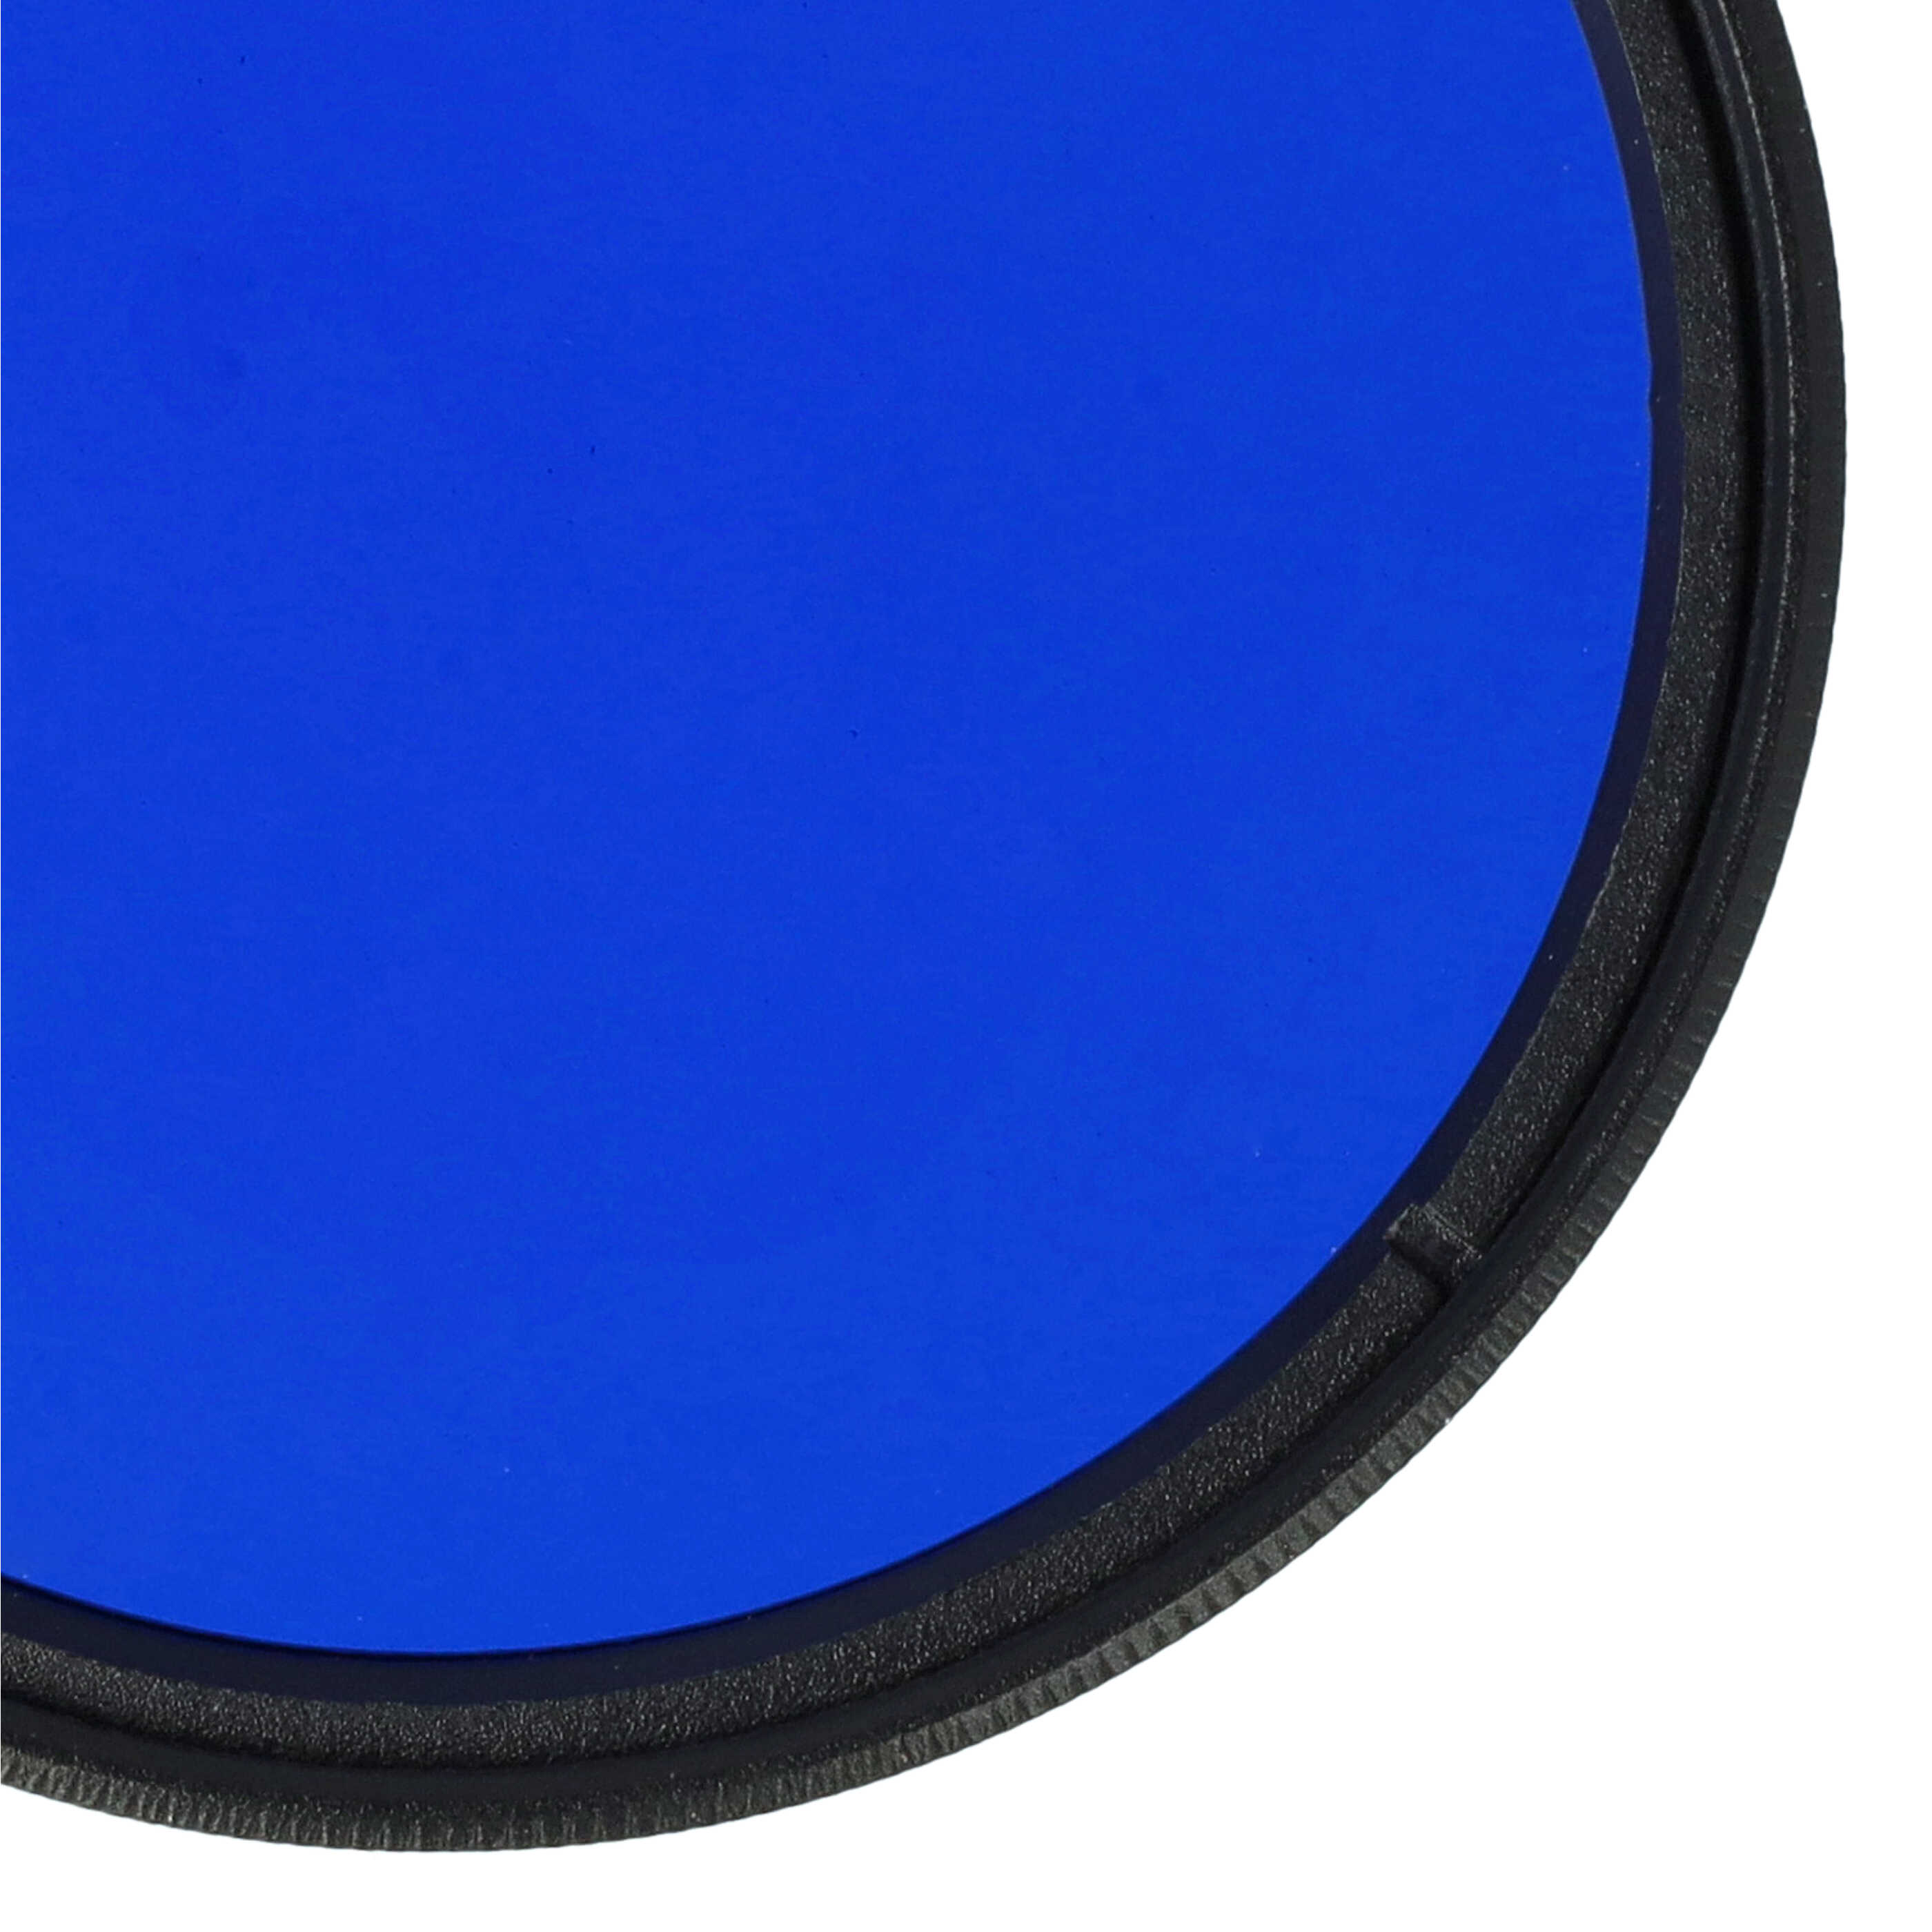 Filtro colorato per obiettivi fotocamera con filettatura da 52 mm - filtro blu